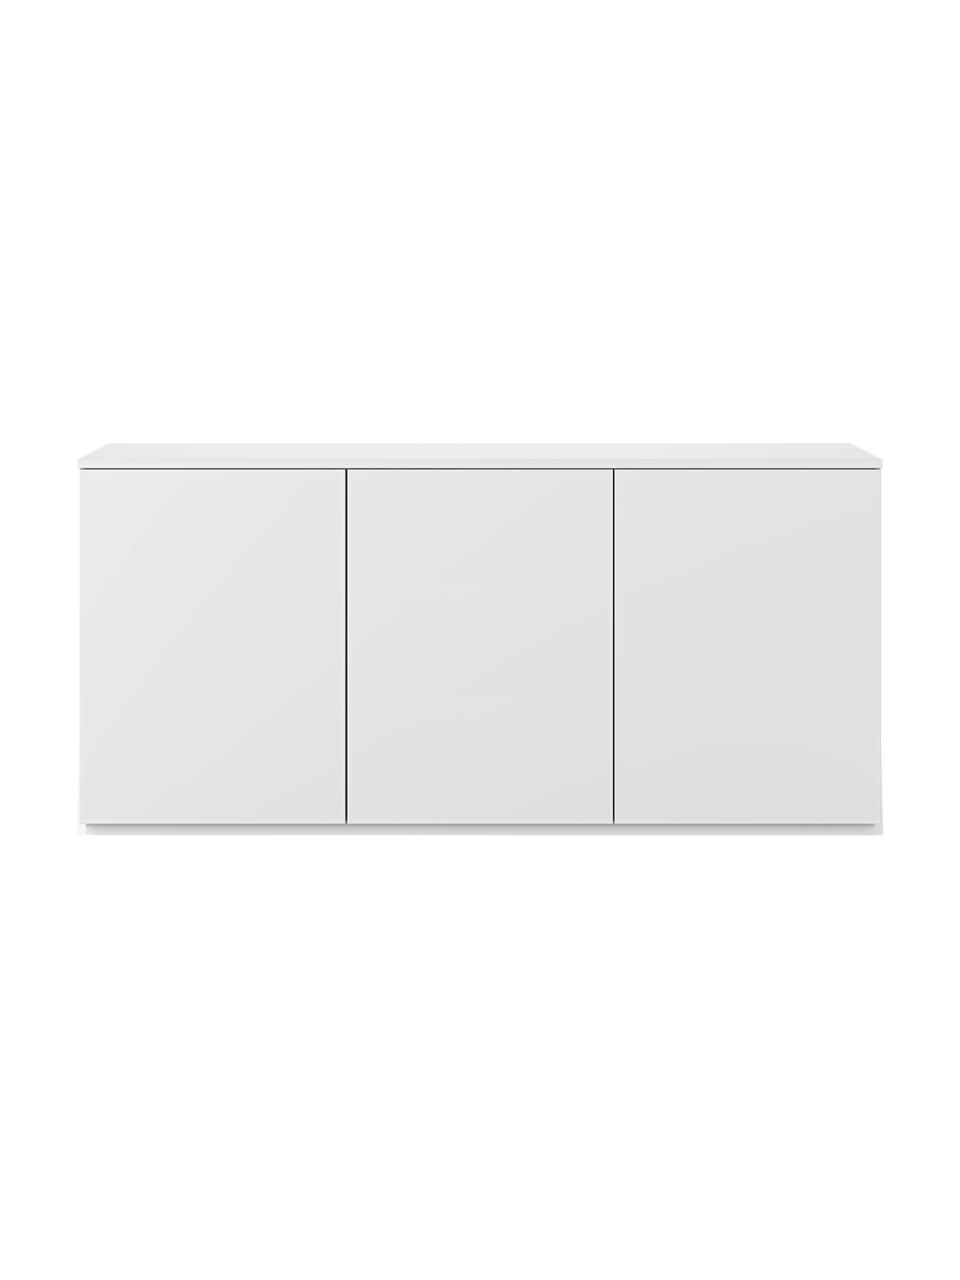 Sideboard Join mit Türen, Mitteldichte Holzfaserplatte, lackiert, FSC®-zertifiziert, Weiß, B 180 x H 84 cm